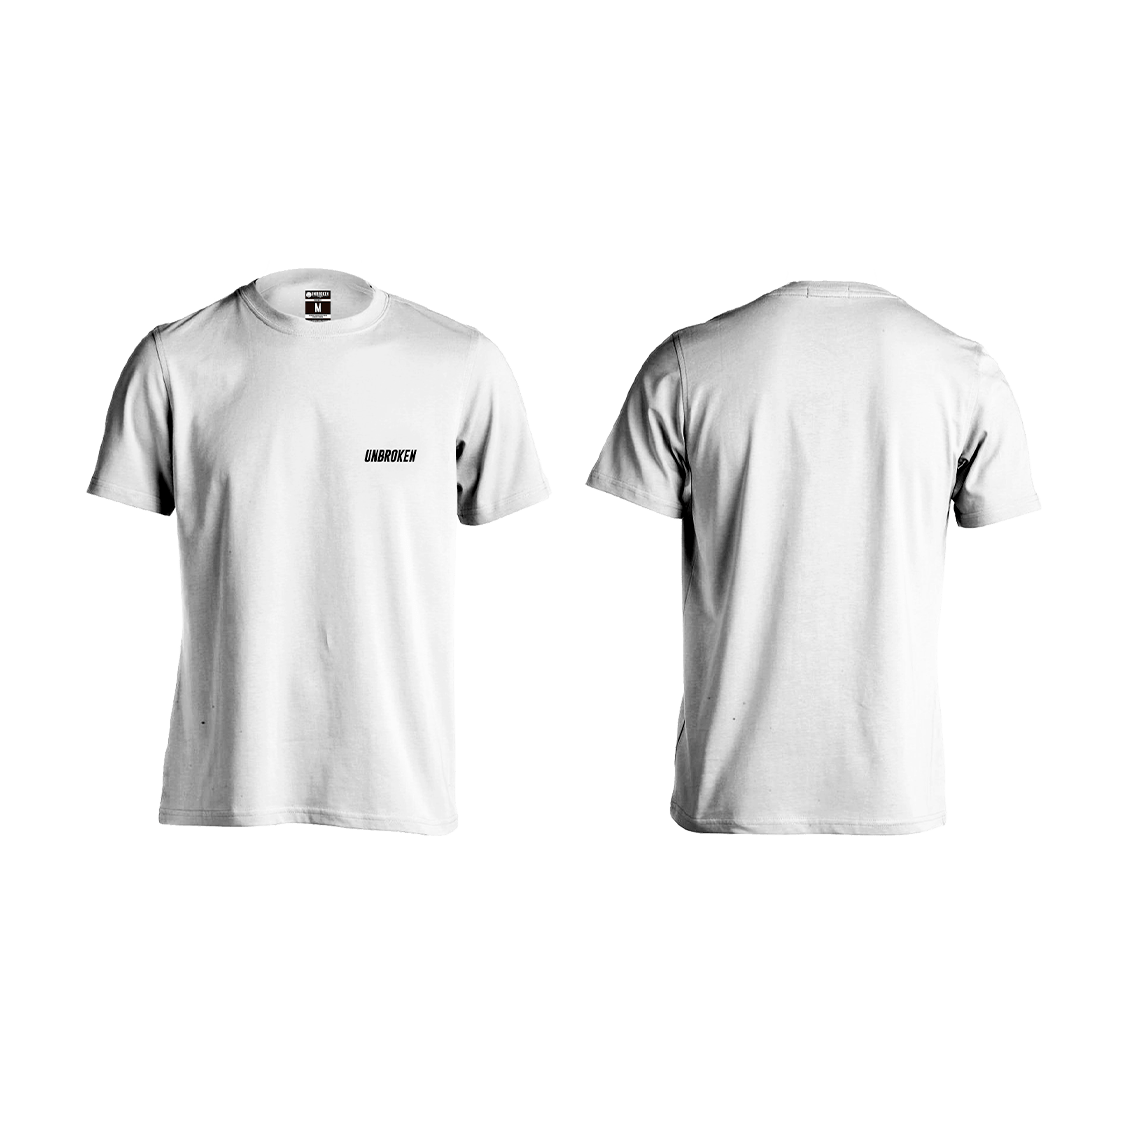 Camiseta Unbroken basic white - Unbroken Sports Wear 